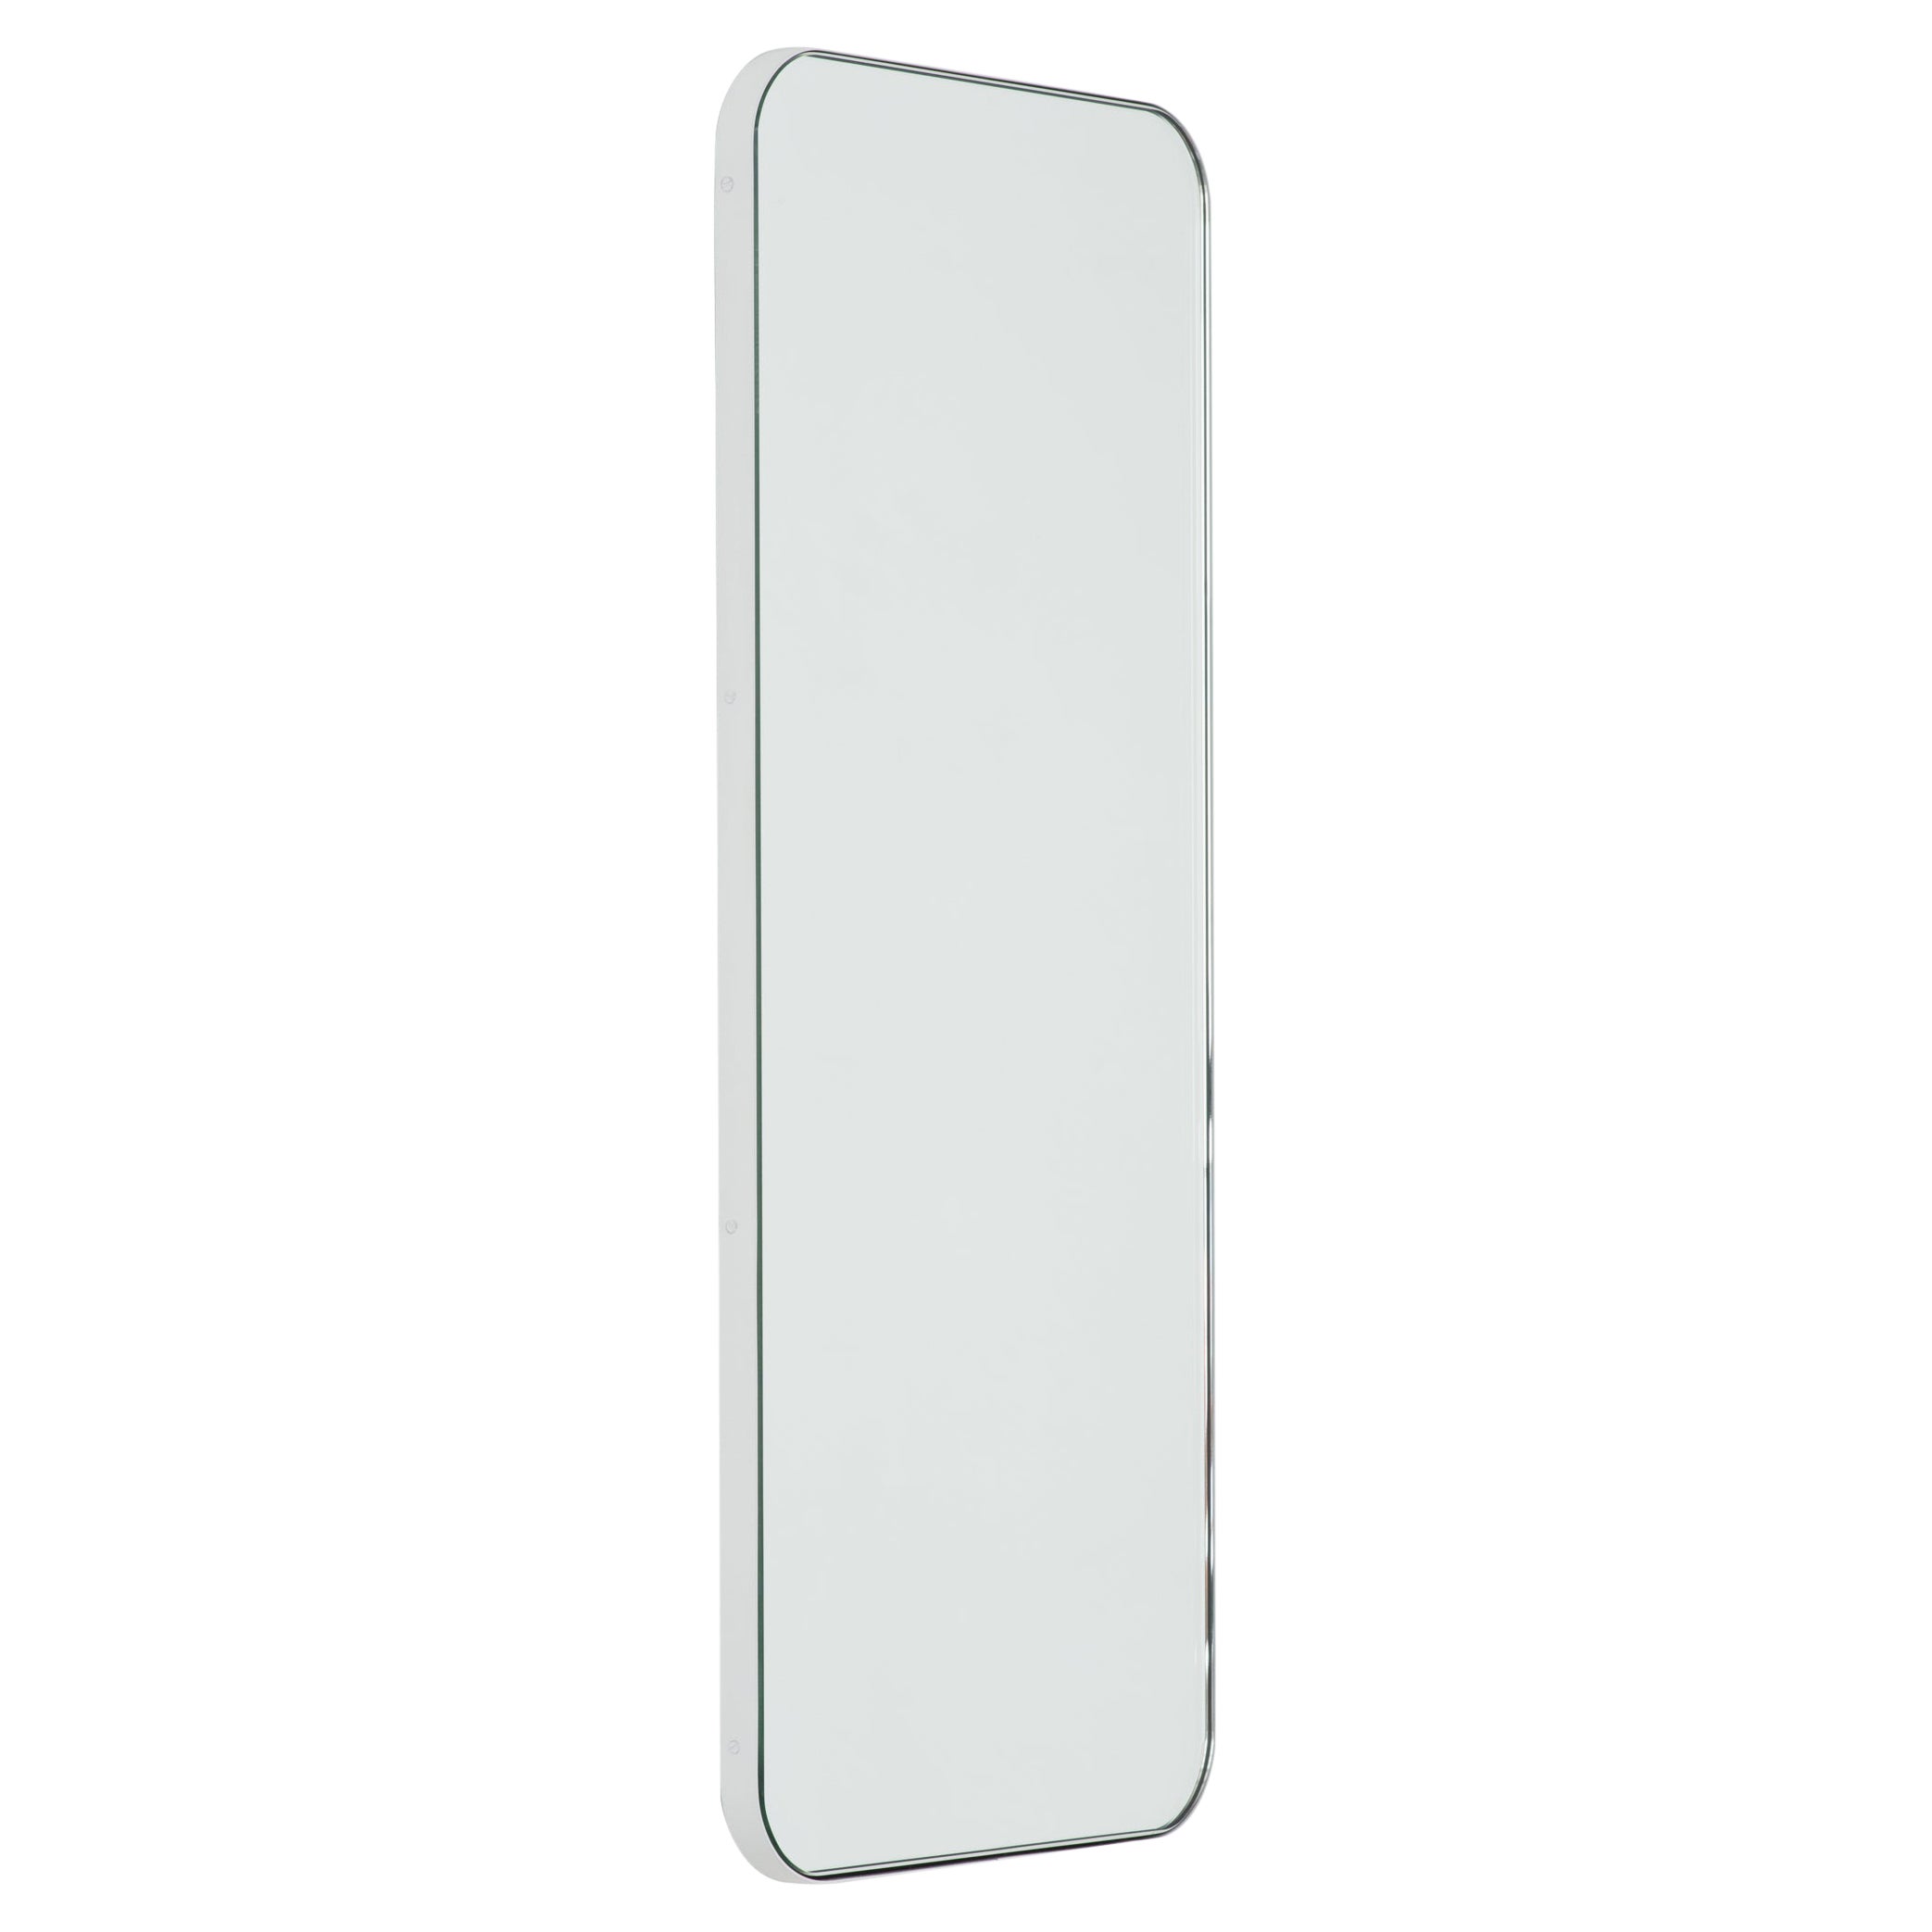 Miroir moderne rectangulaire avec cadre blanc de la collection Quadris, petit